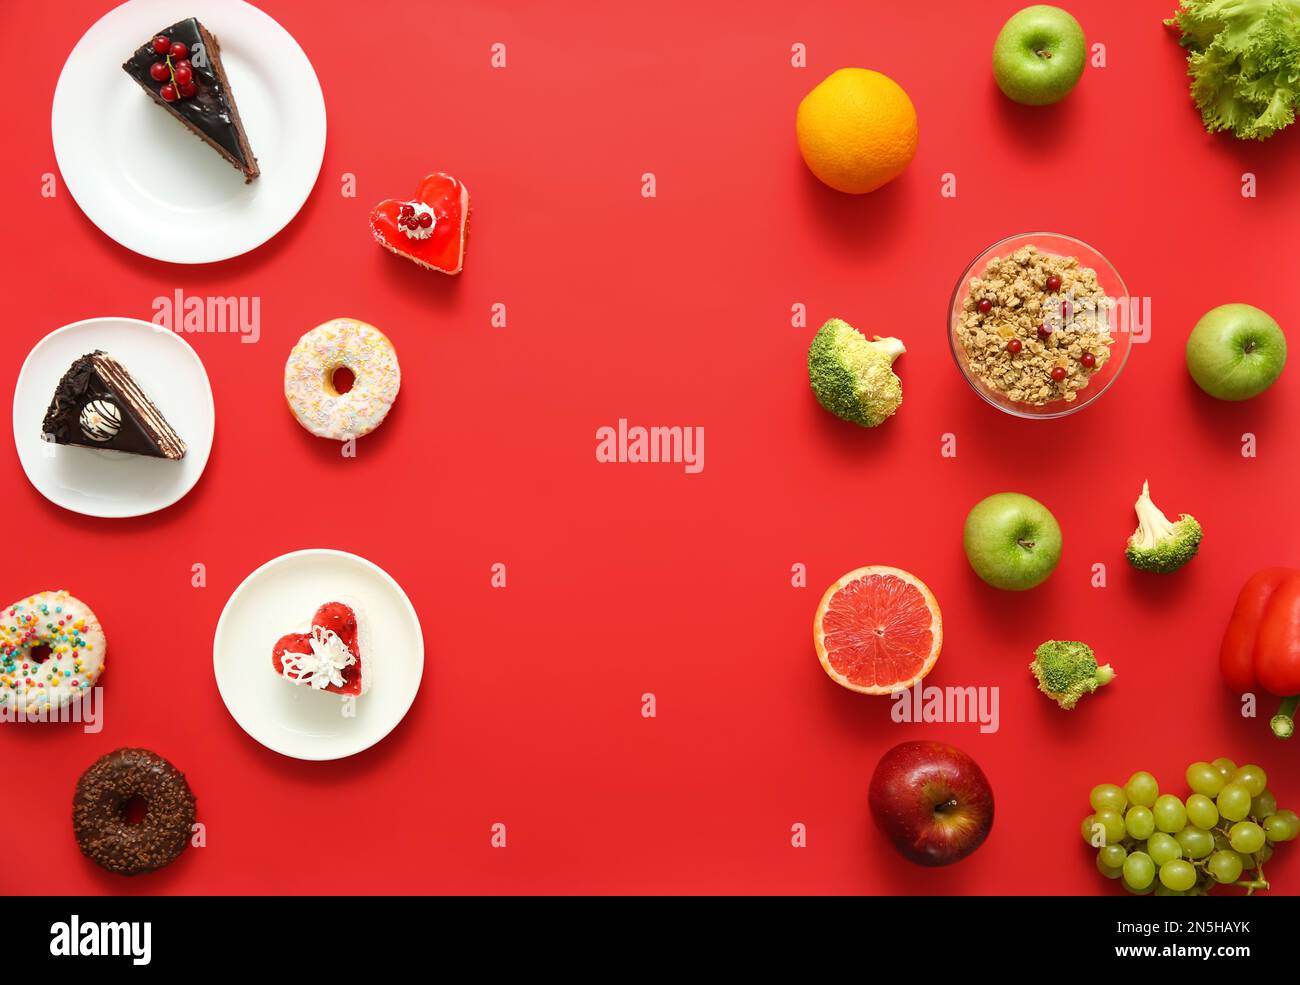 Auswahlkonzept. Flache Laienzusammensetzung mit Süßigkeiten und gesunden Lebensmitteln auf rotem Hintergrund Stockfoto